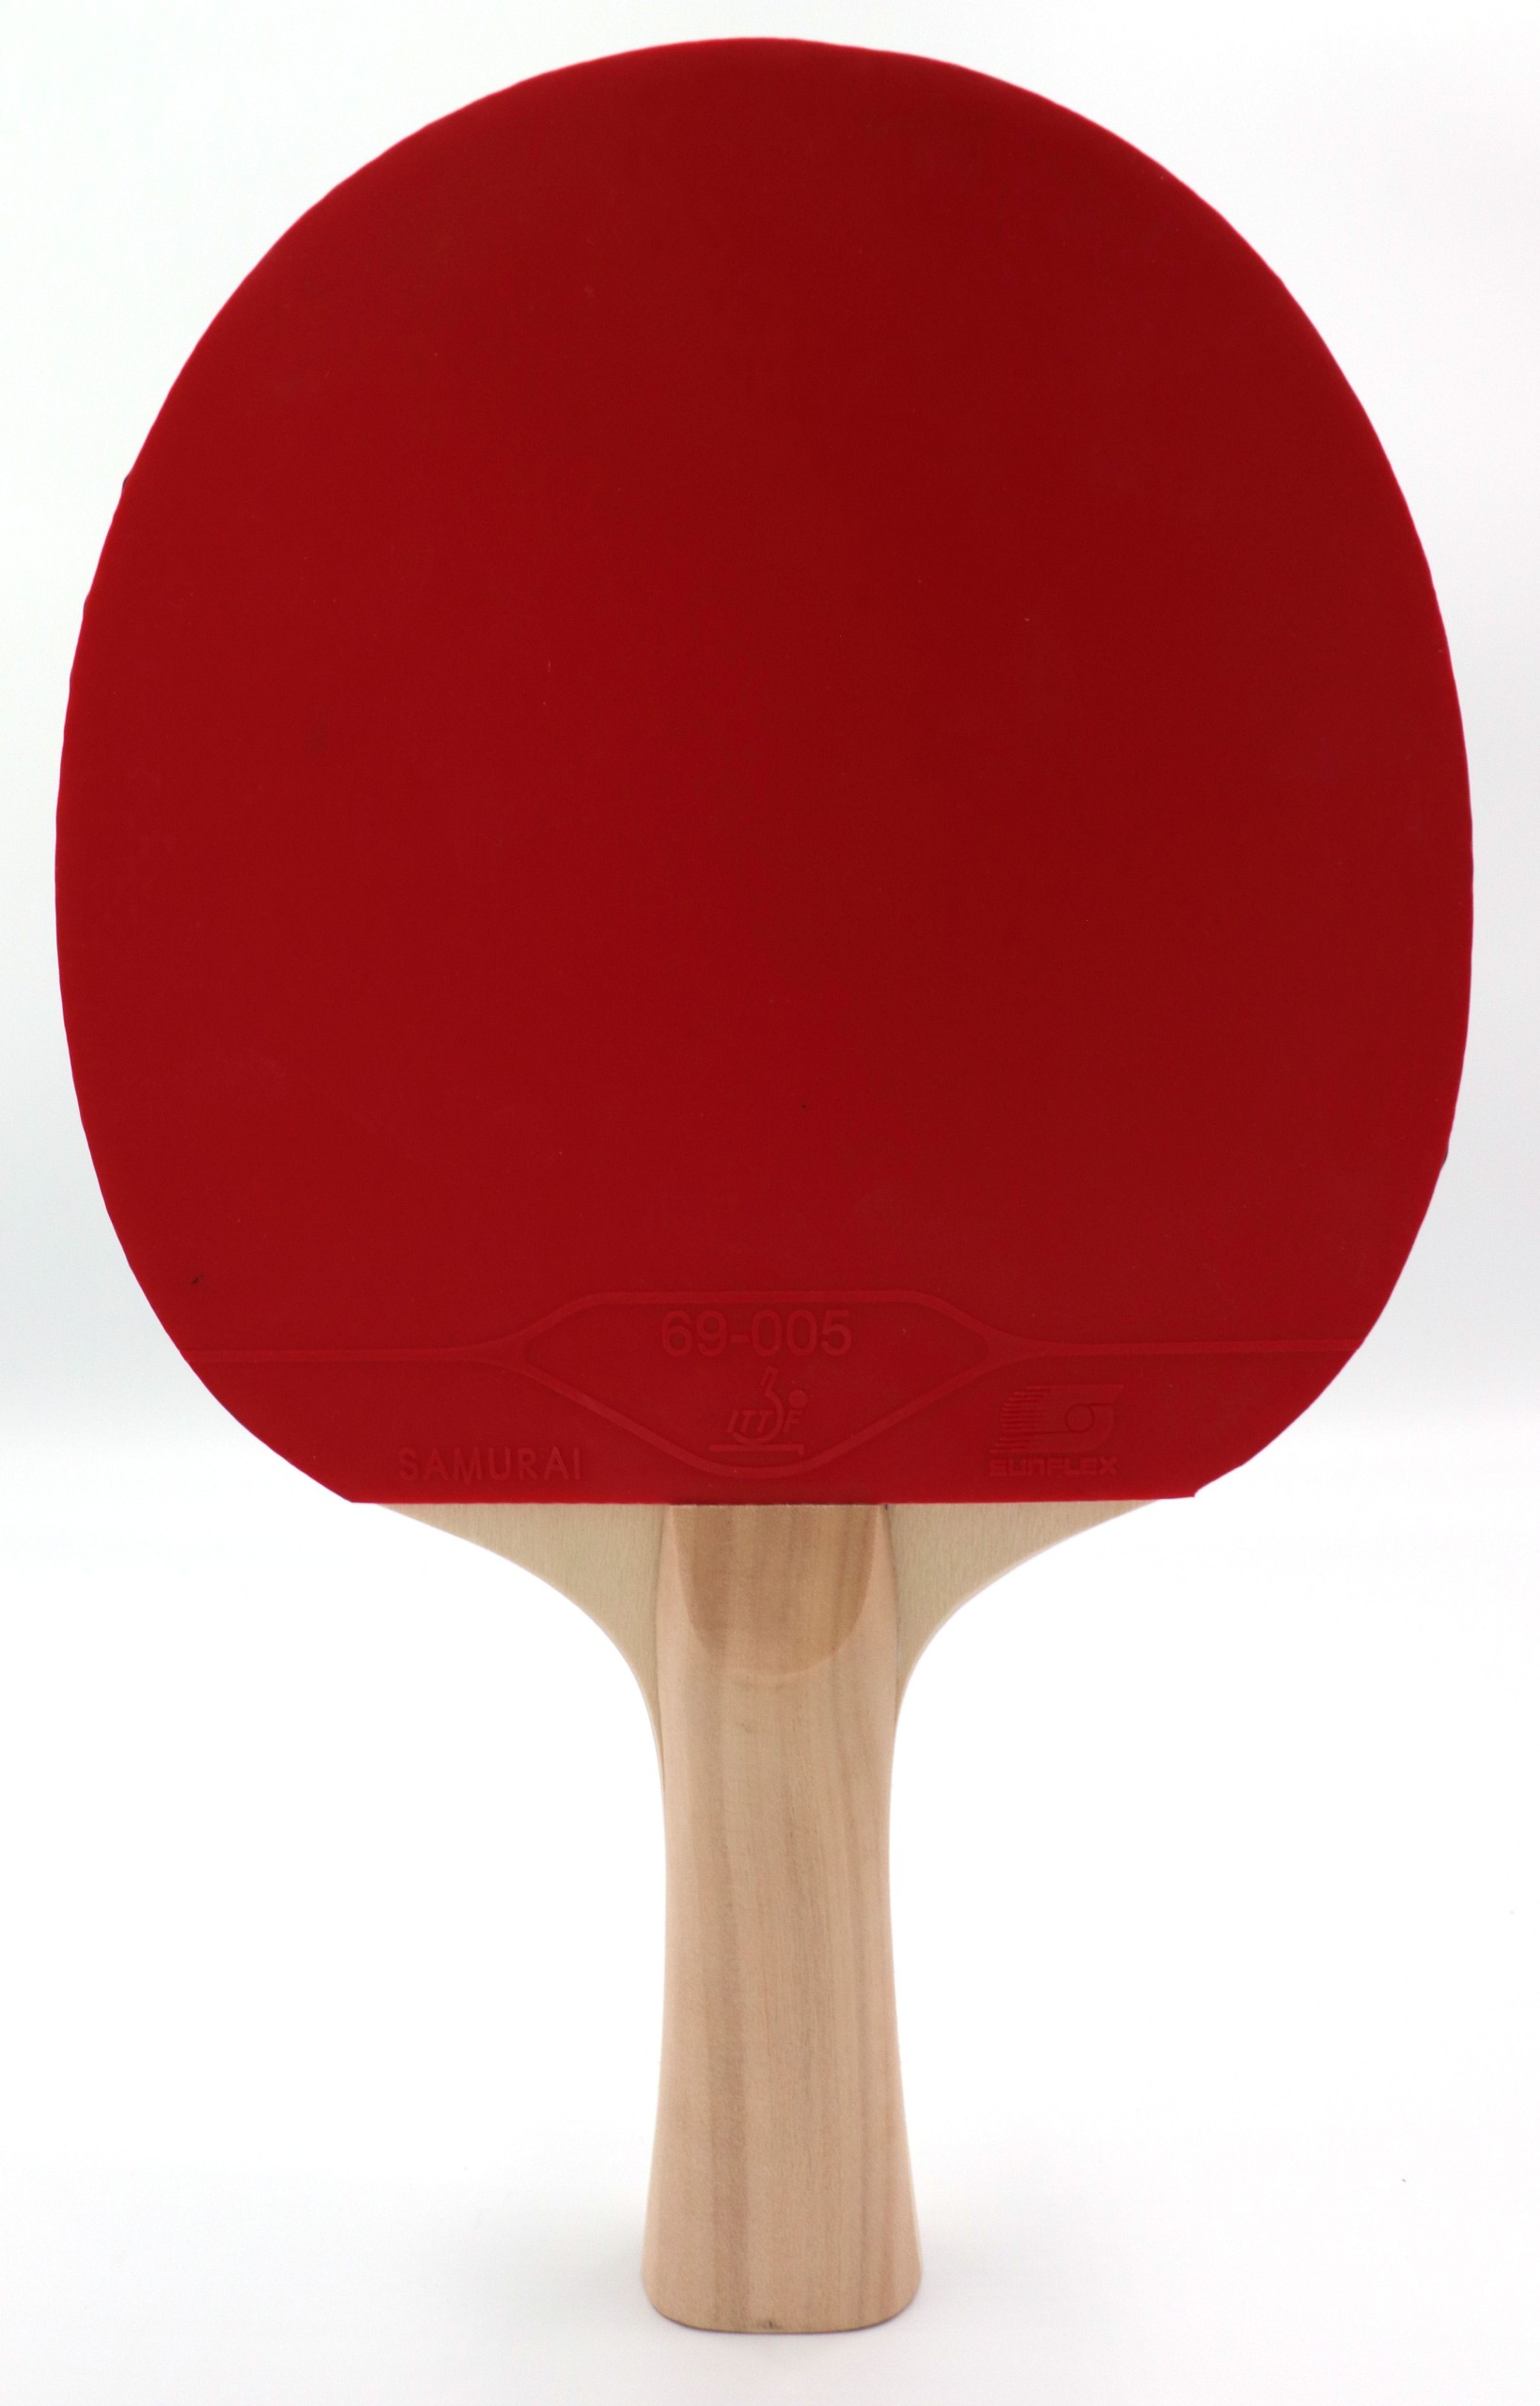 Ρακέτα Ping Pong Sunflex Race